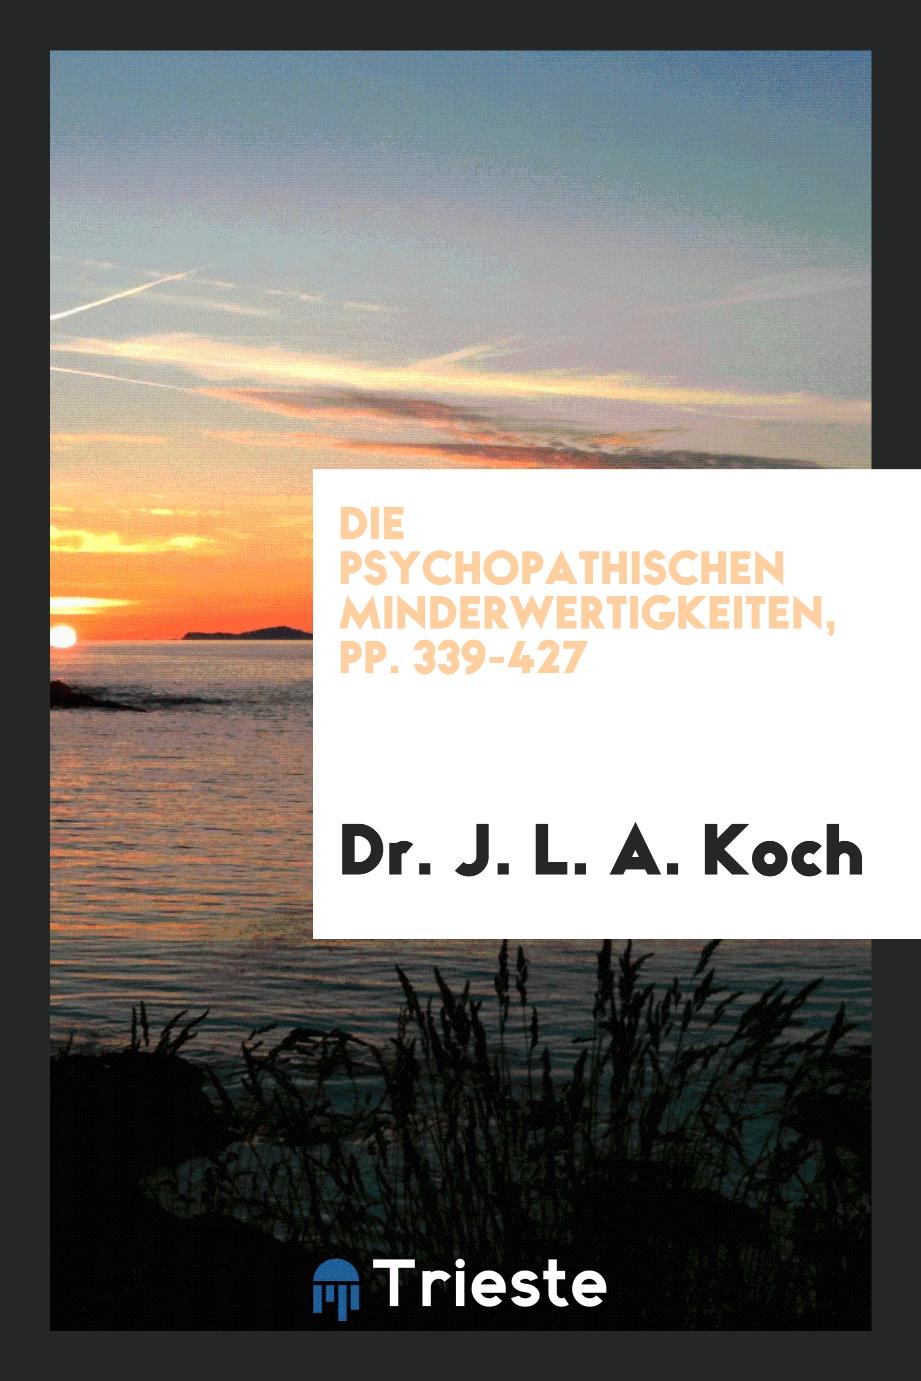 Die Psychopathischen Minderwertigkeiten, pp. 339-427